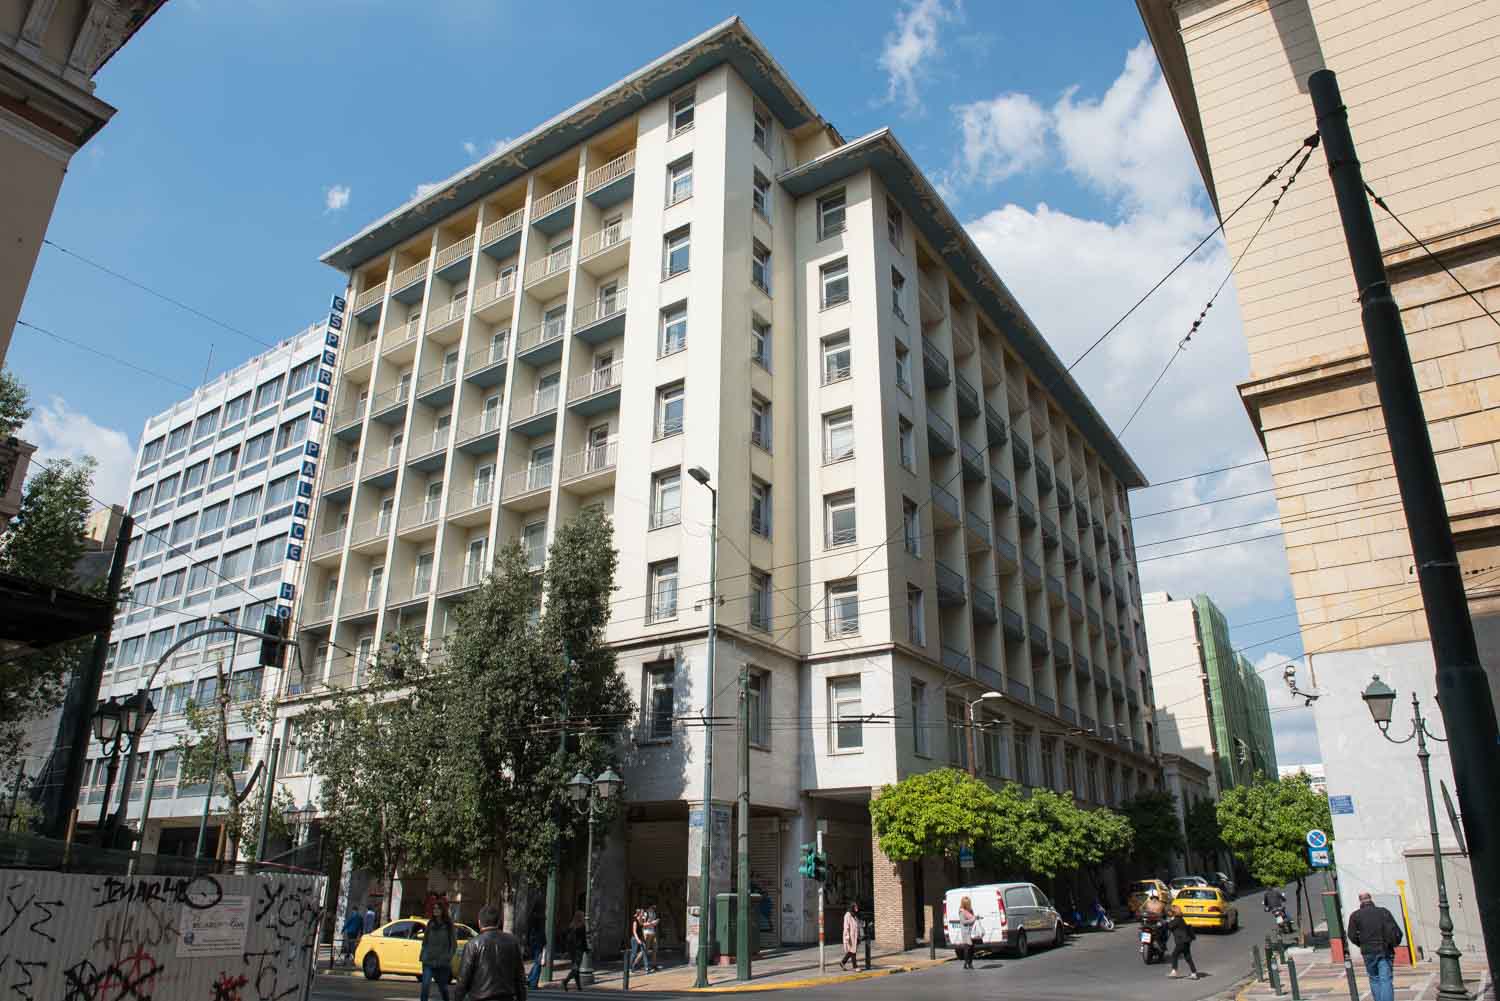 Το ξενοδοχείο Εσπέρια, στη συμβολή της Σταδίου με την Εδουάρδου Λω, έκλεισε το 2010 ως ένα από τα πρώτα θύματα της οικονομικής κρίσης. 